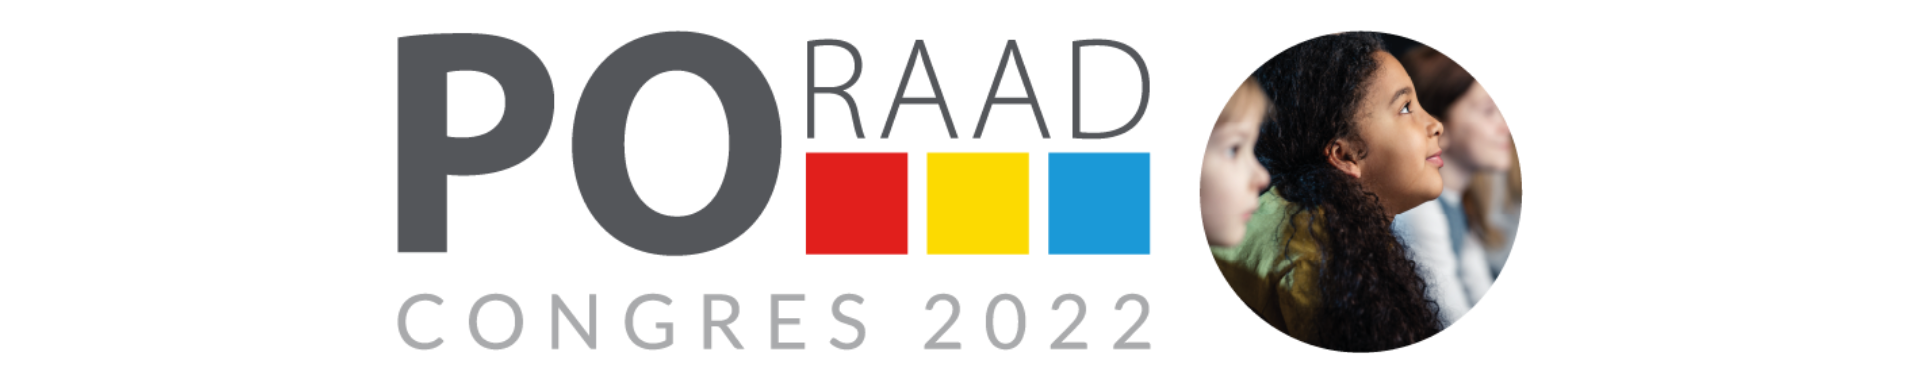 PO Raad congres 2022